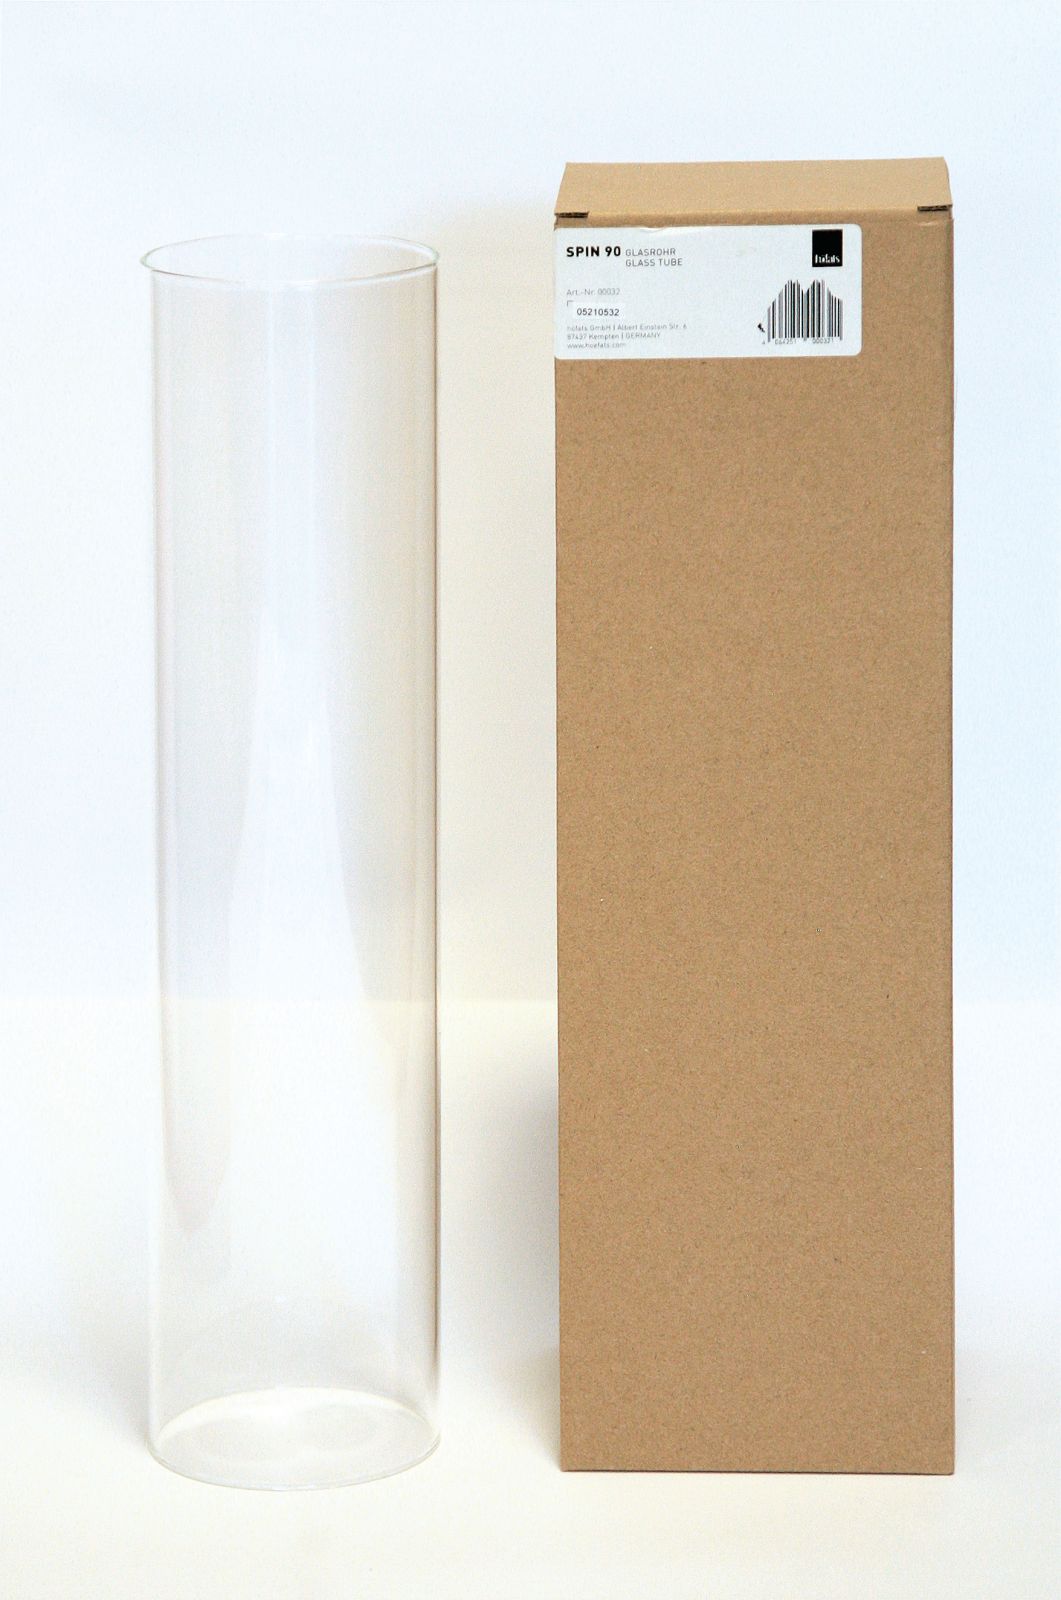 SPIN 90 Glass - náhradní sklo pro biokrby Hofats SPIN 90